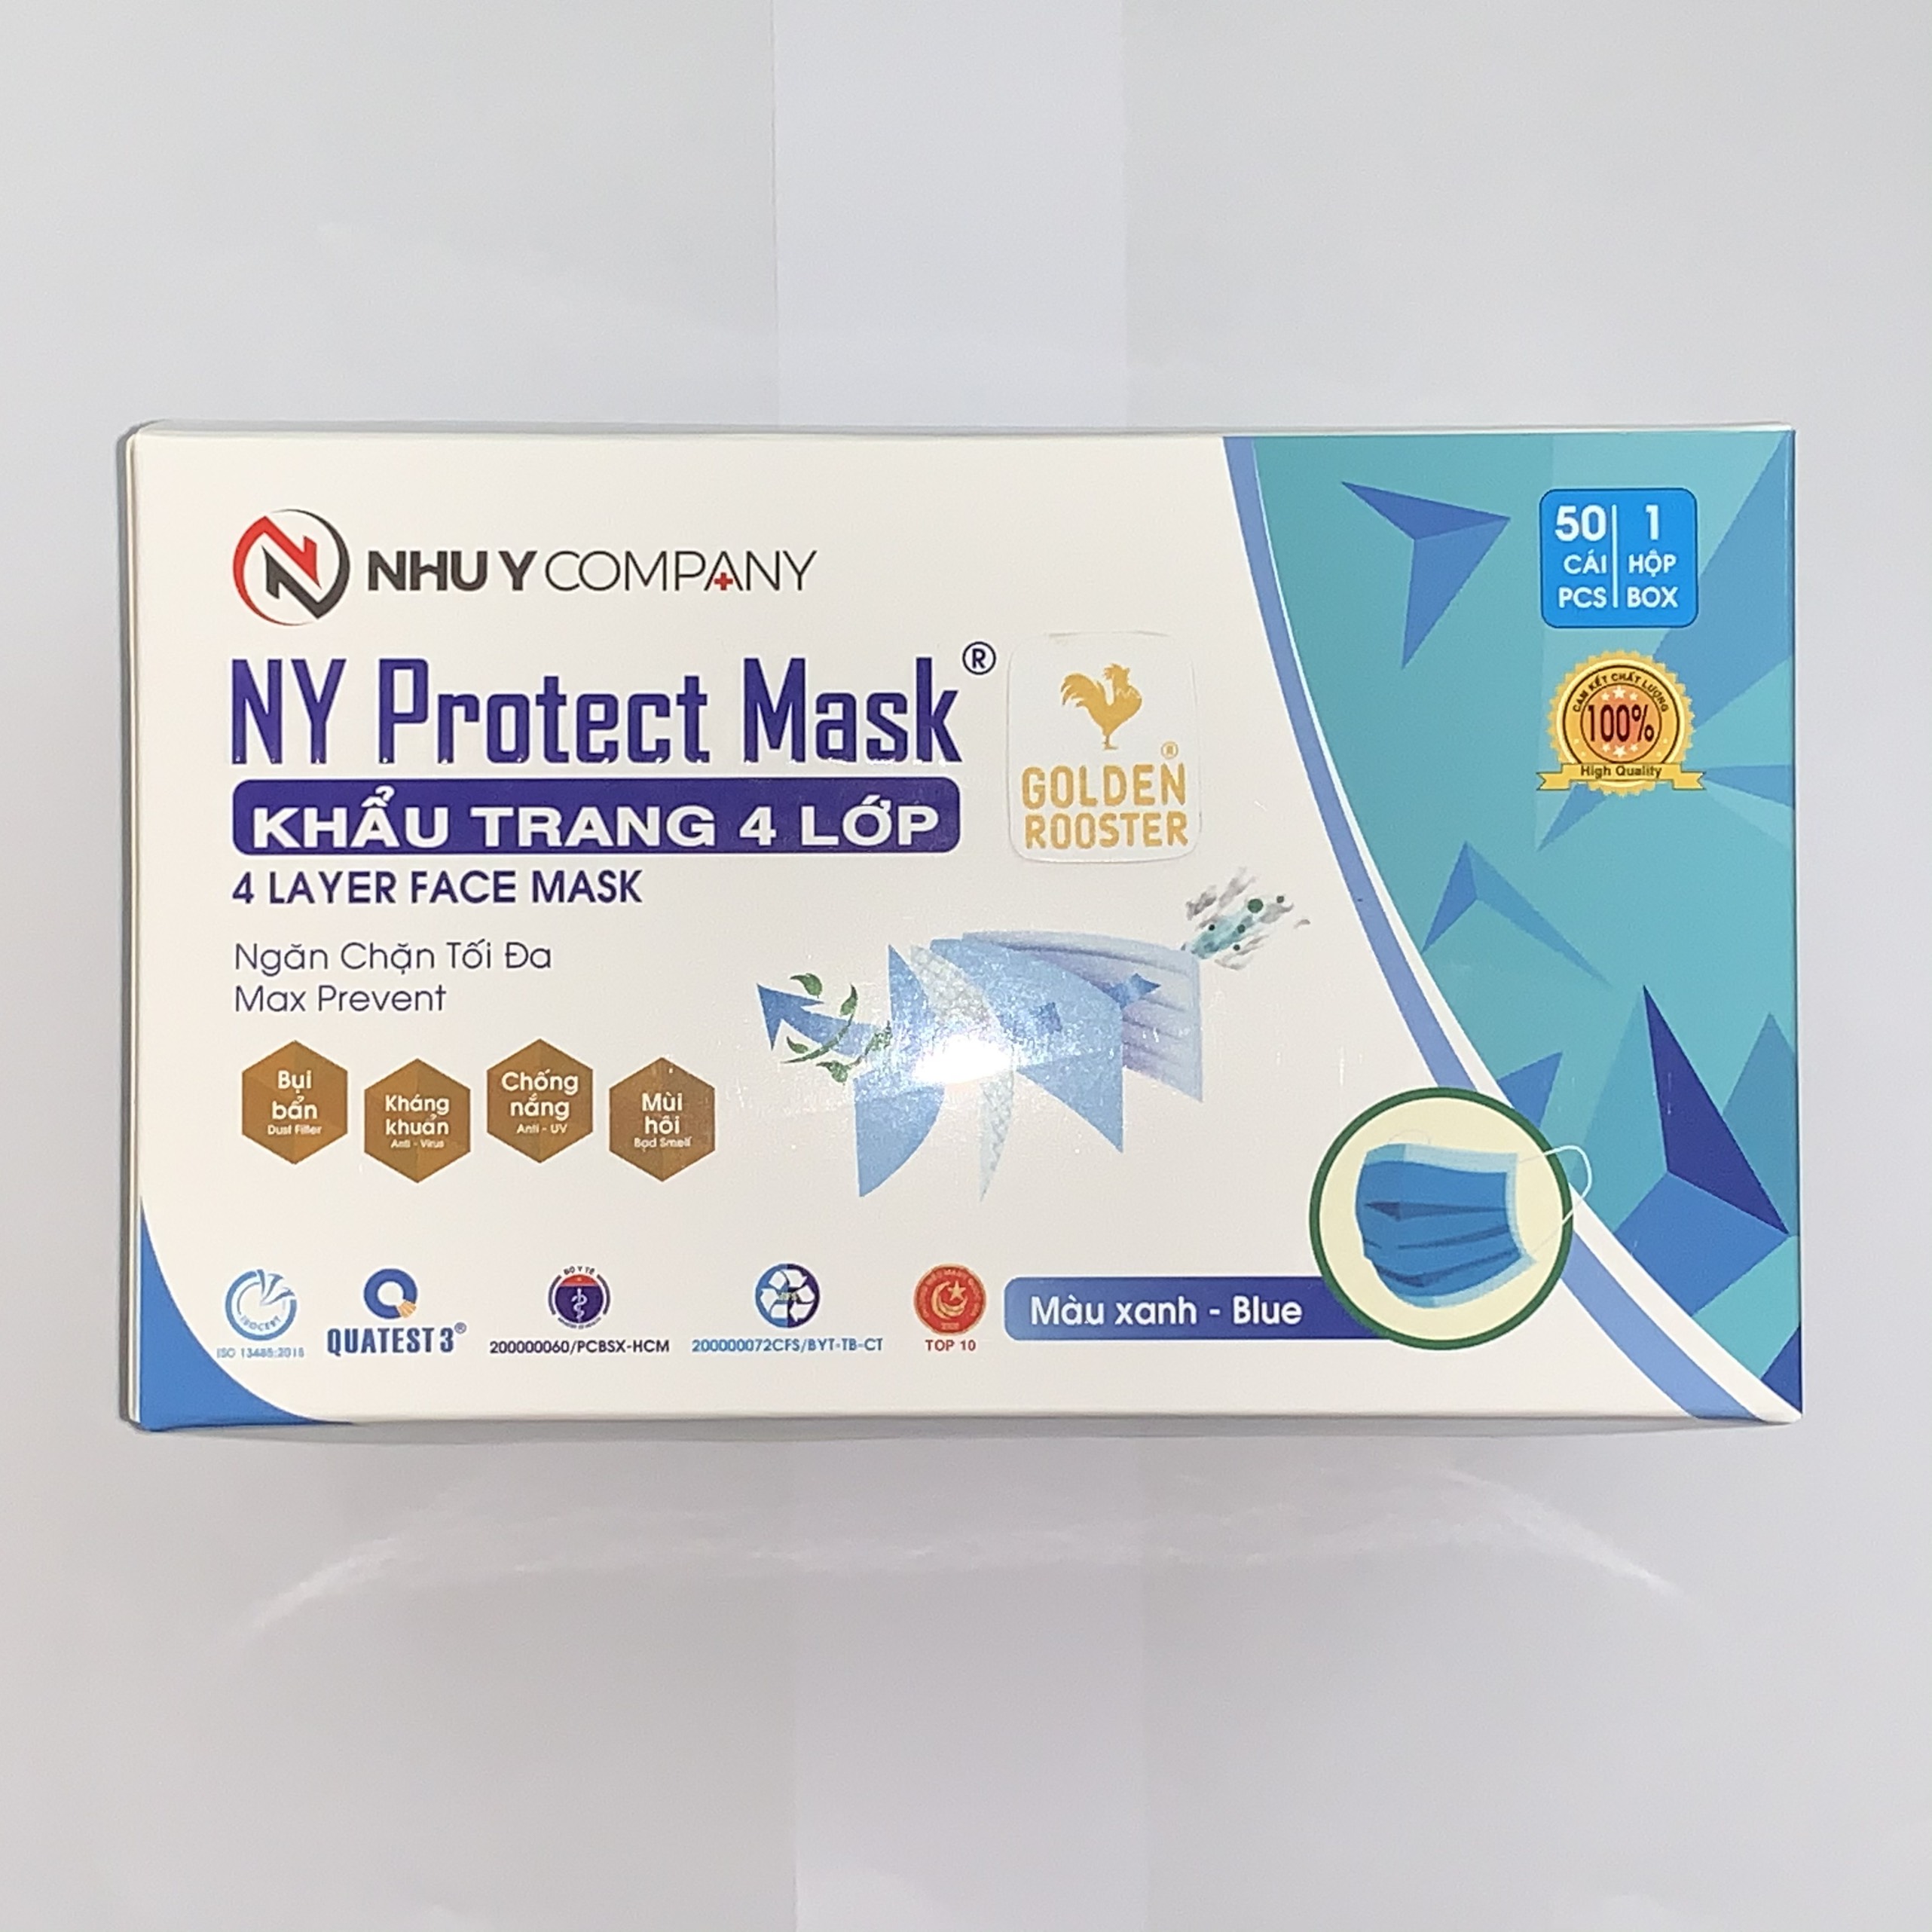 Khẩu trang 4 lớp Như Ý (NY Protect Mask)